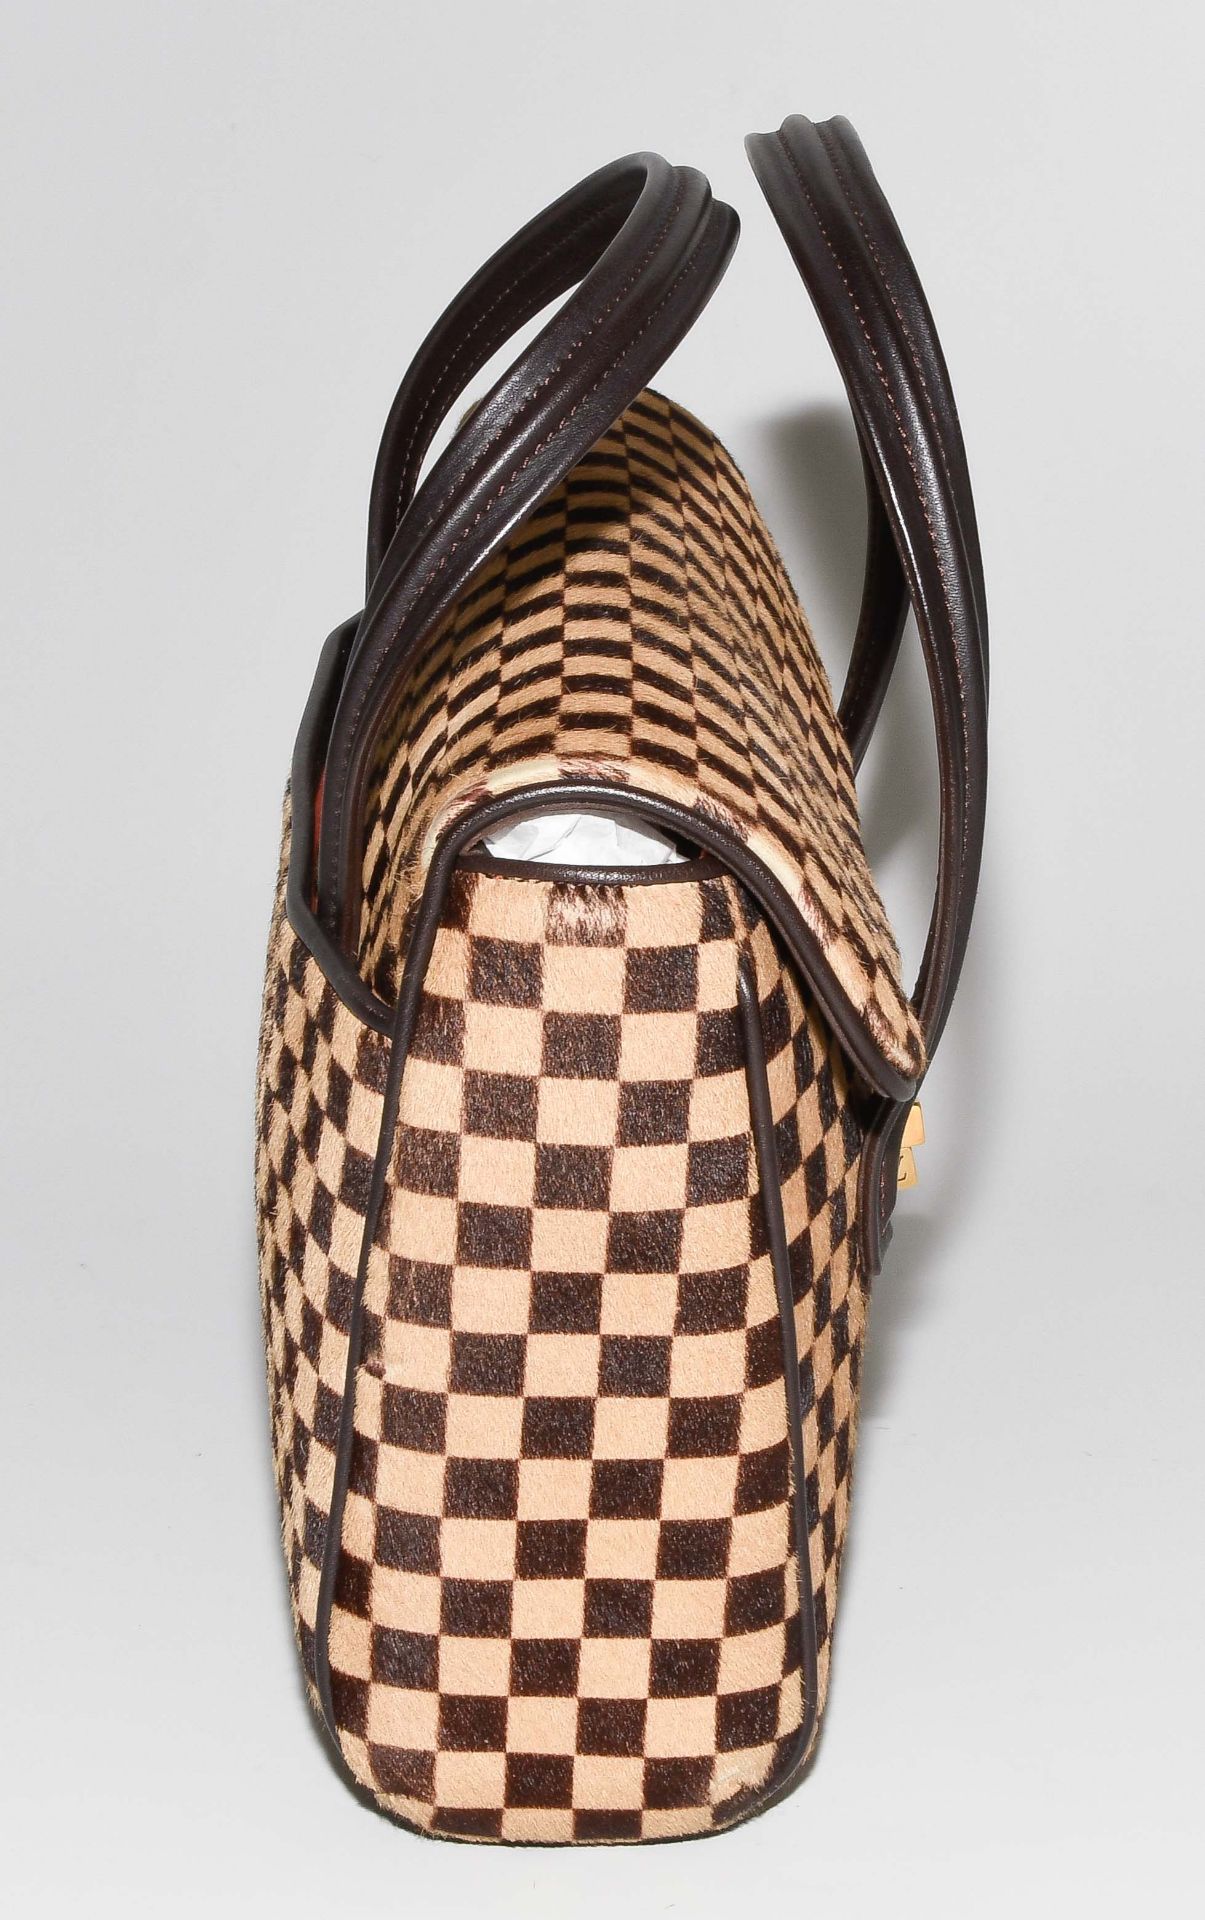 Louis Vuitton, Handtasche "Lionne" - Bild 5 aus 14